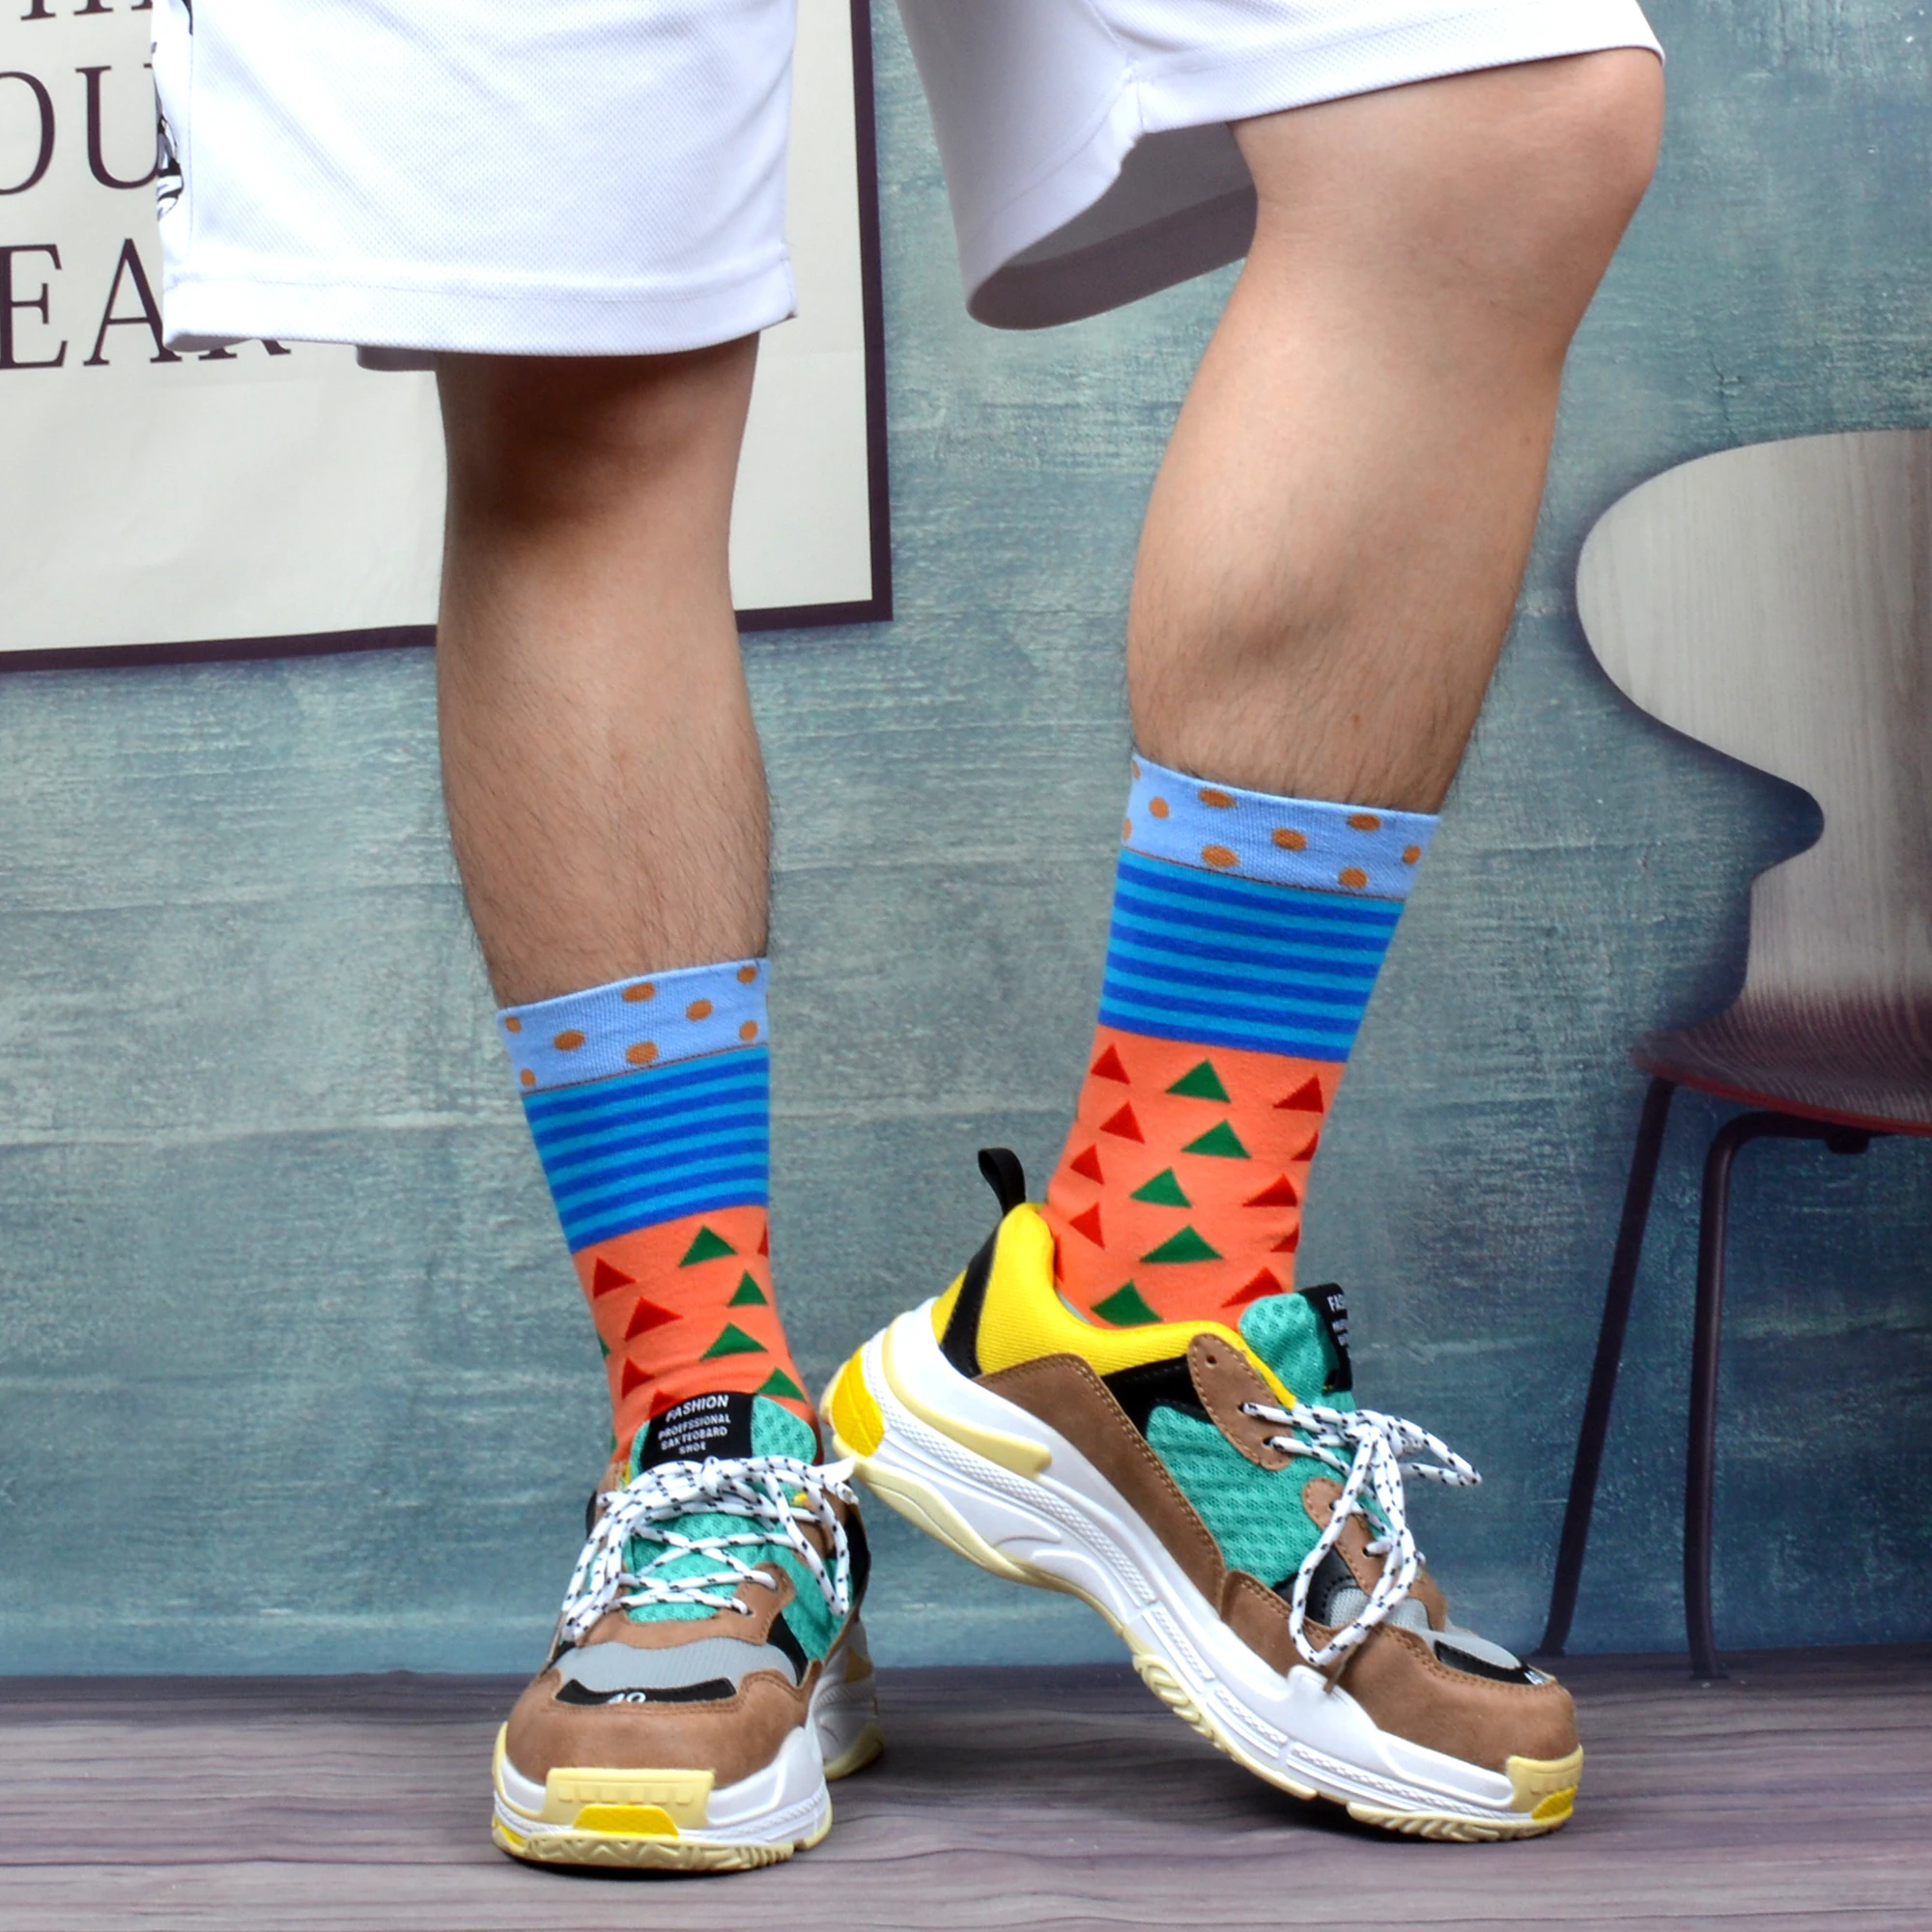 SANZETTI/12 пар/партия, мужские цветные забавные носки из чесаного хлопка, высококачественные носки в уличном стиле, подарок, носки Happpy